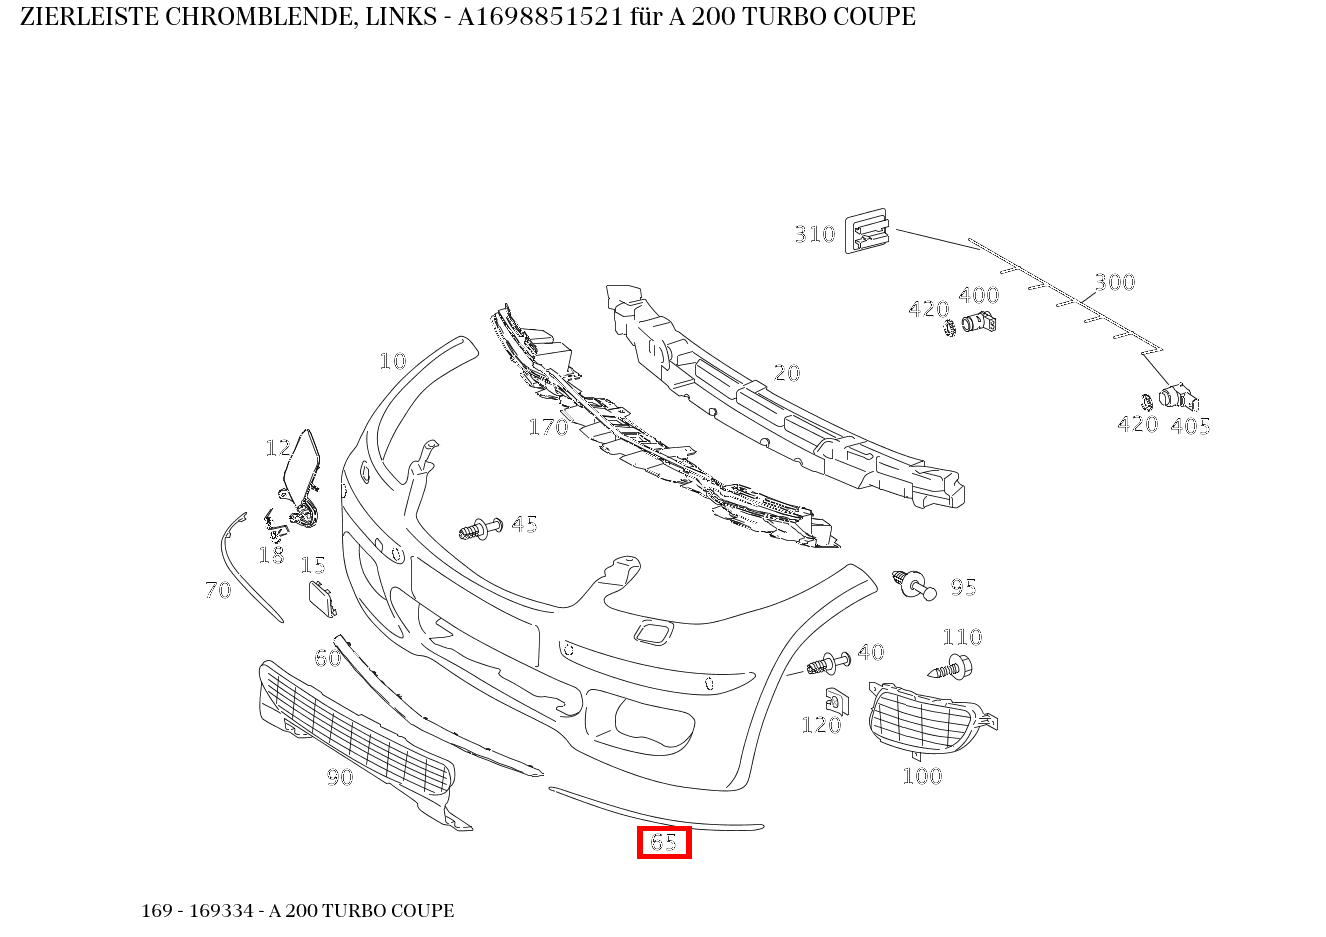 Zierleiste CHROMBLENDE, LINKS für C 205, A 169-Klasse